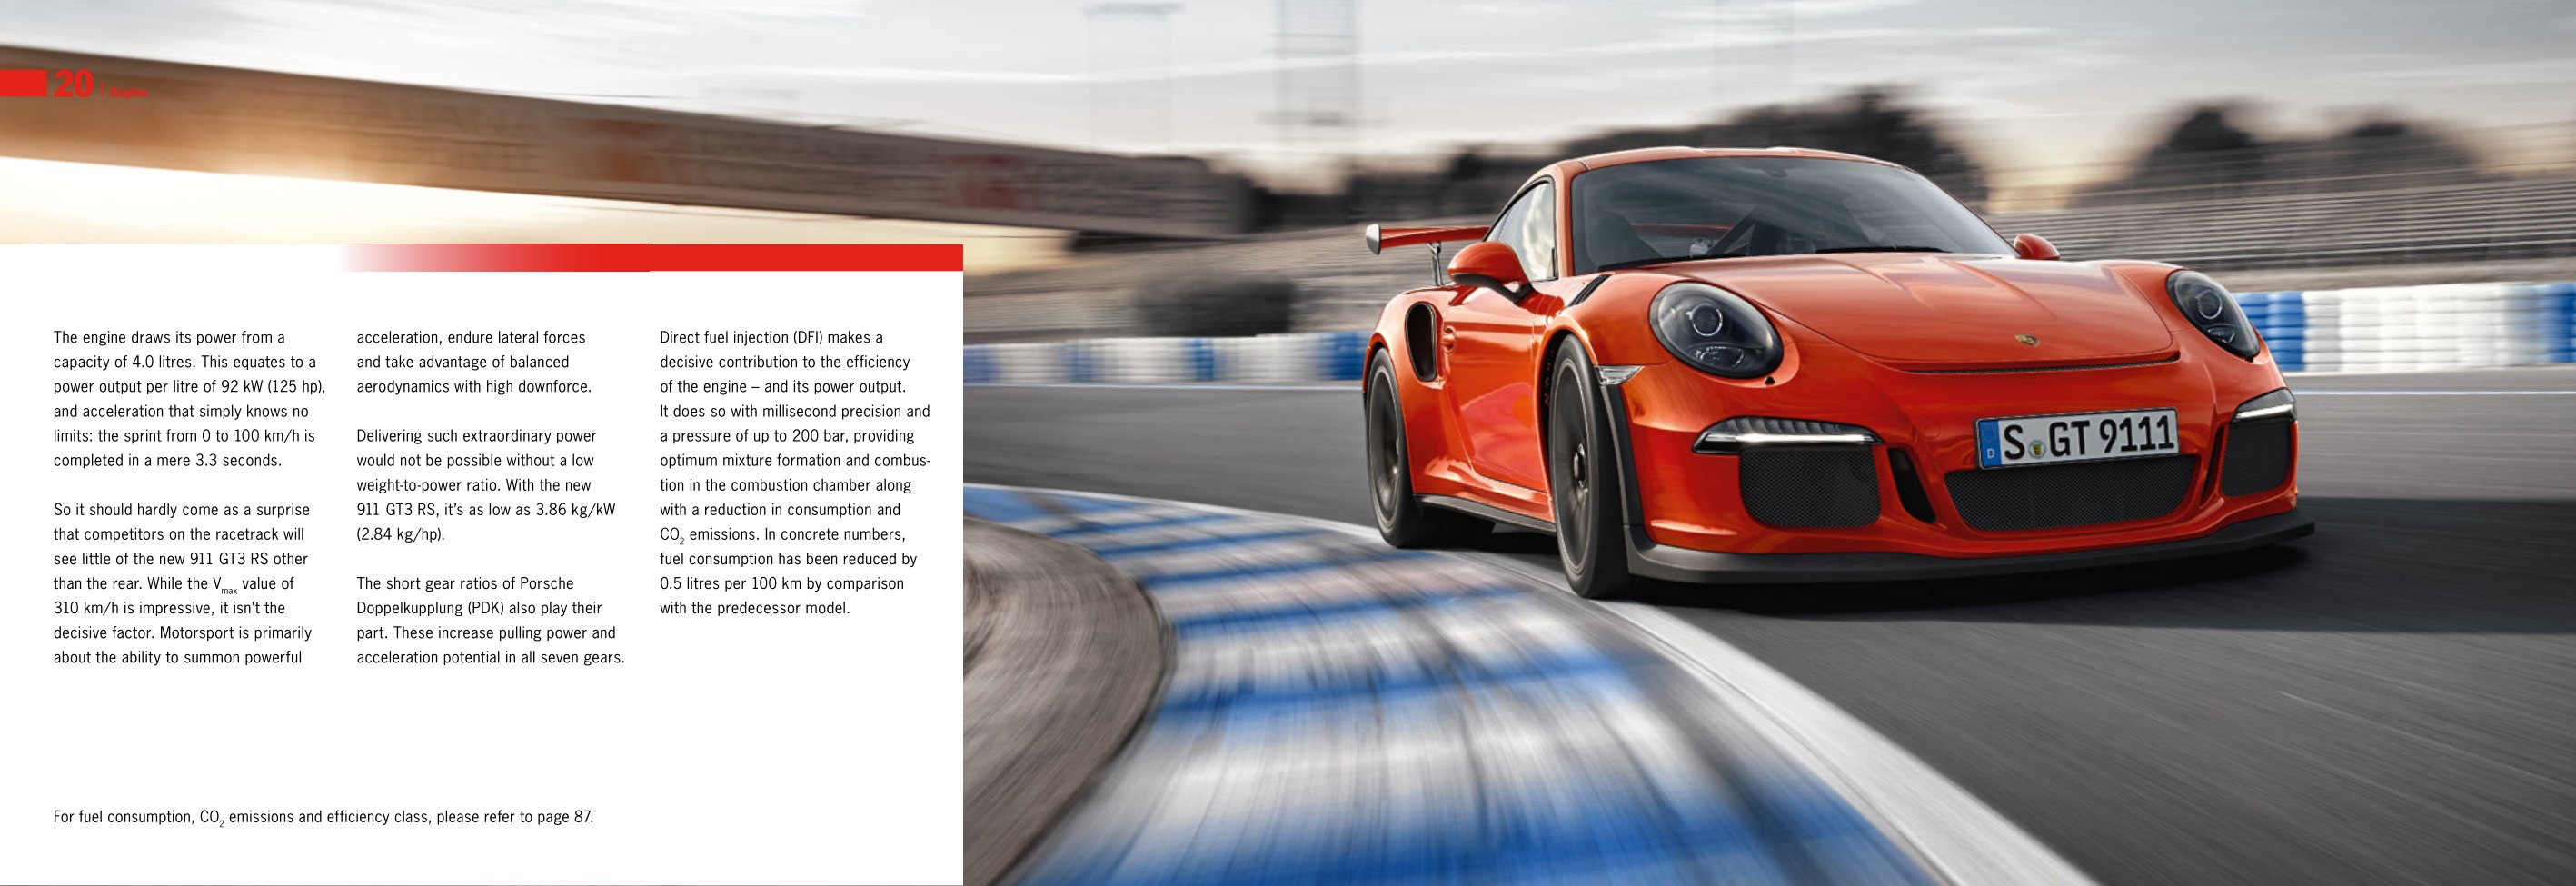 2015 Porsche 911 GT3-RS Brochure Page 19